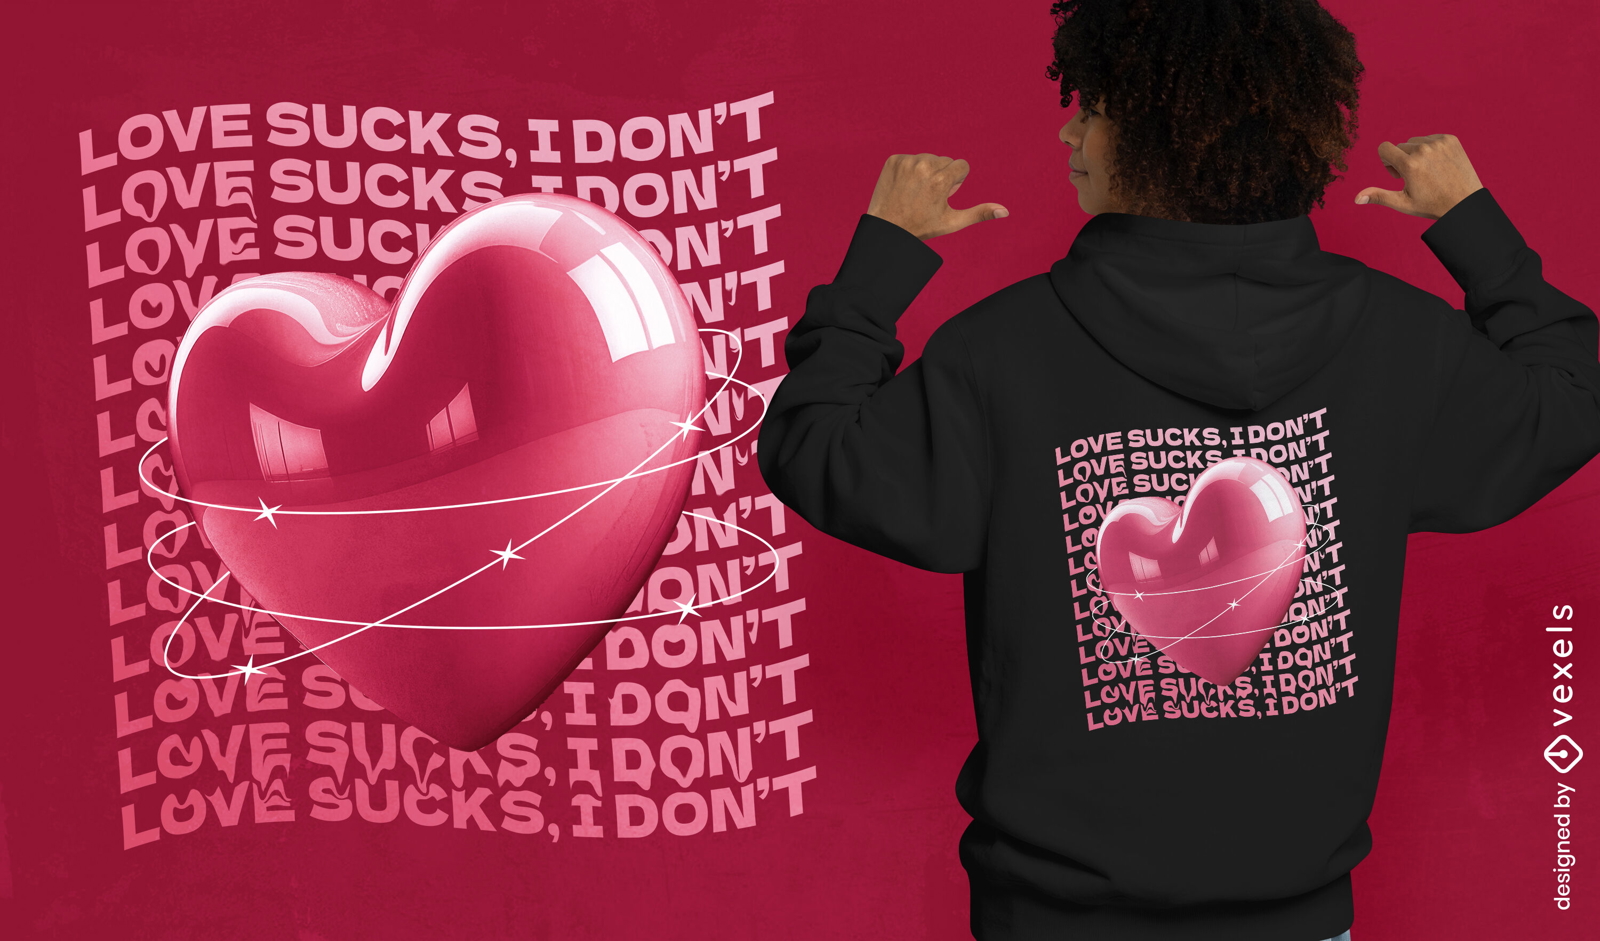 Love sucks quote t-shirt design